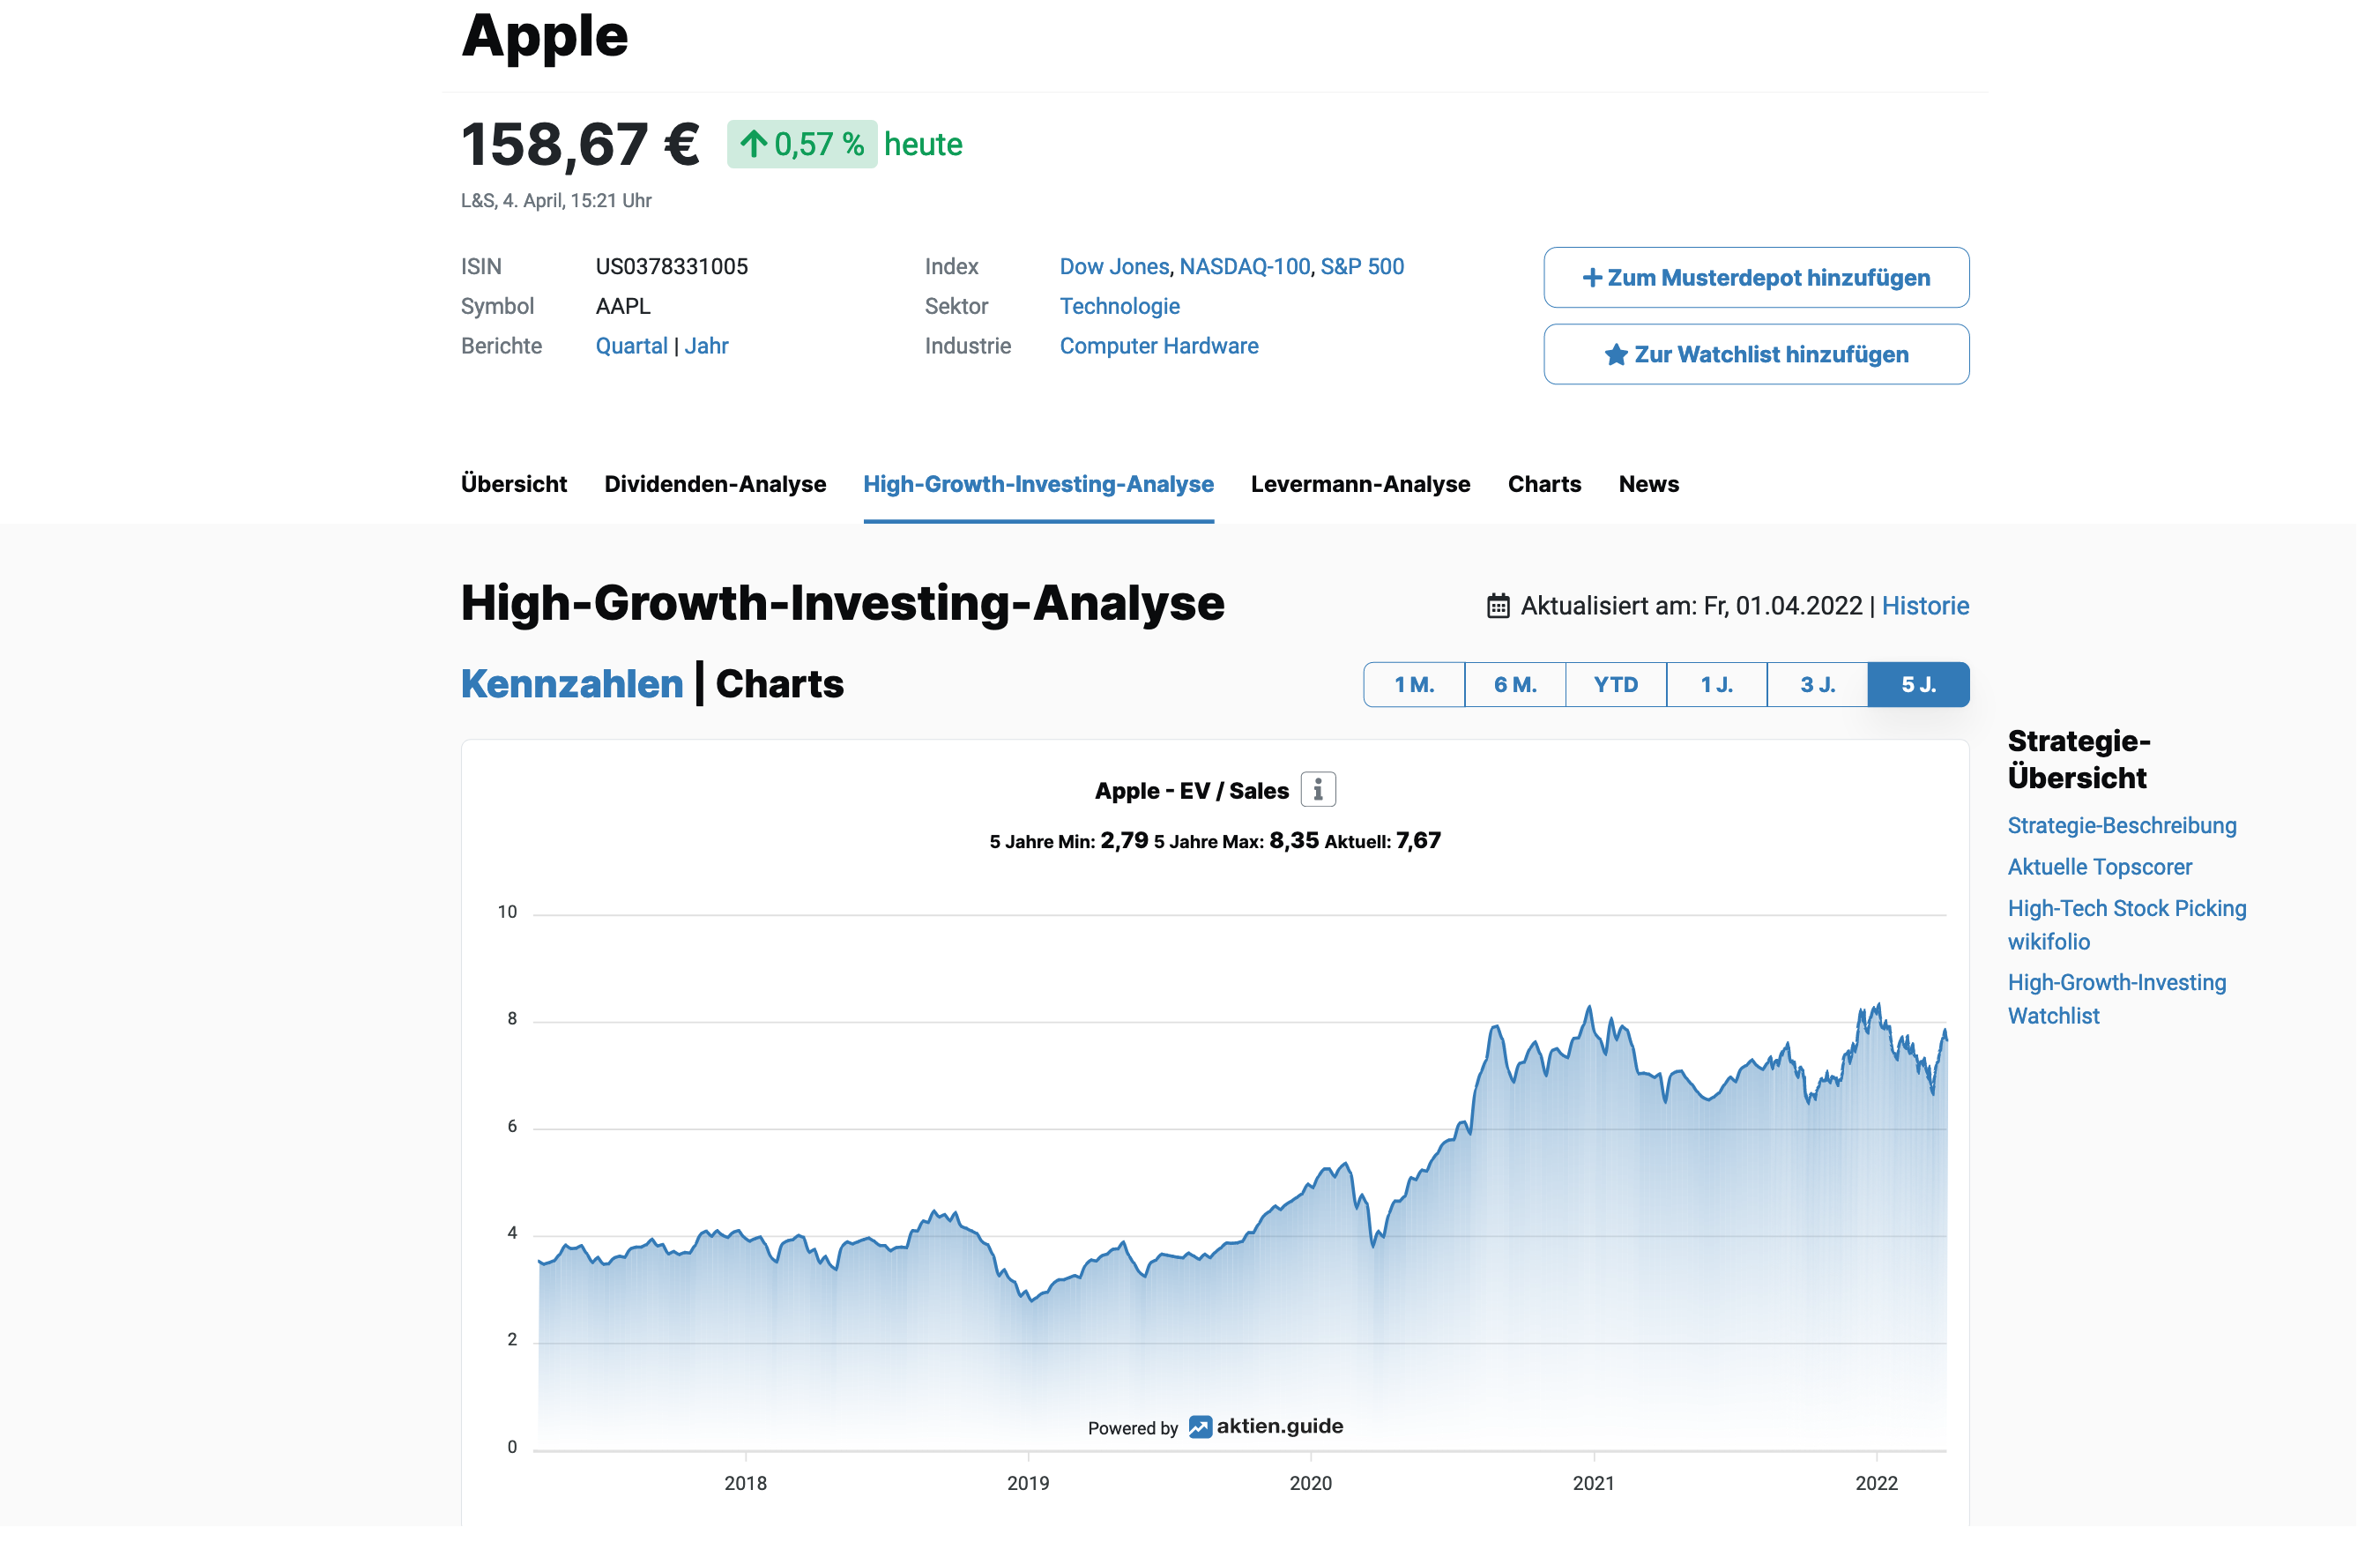 Apple Aktie nach der High-Growth-Investing-Strategie analysiert.